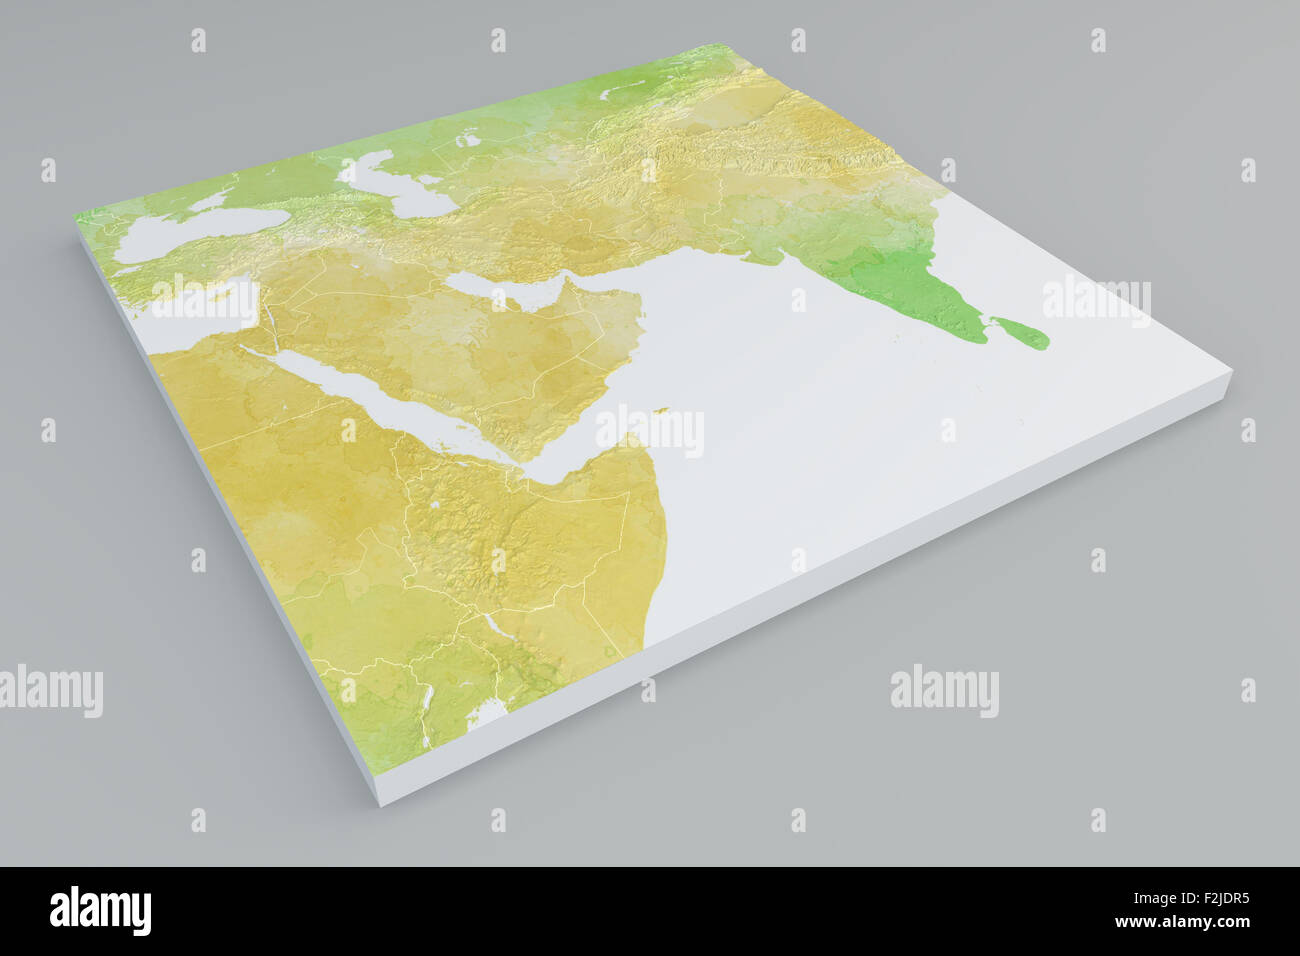 Abschnitt der flach physische Karte des Nahen Ostens auf grauem Hintergrund Stockfoto